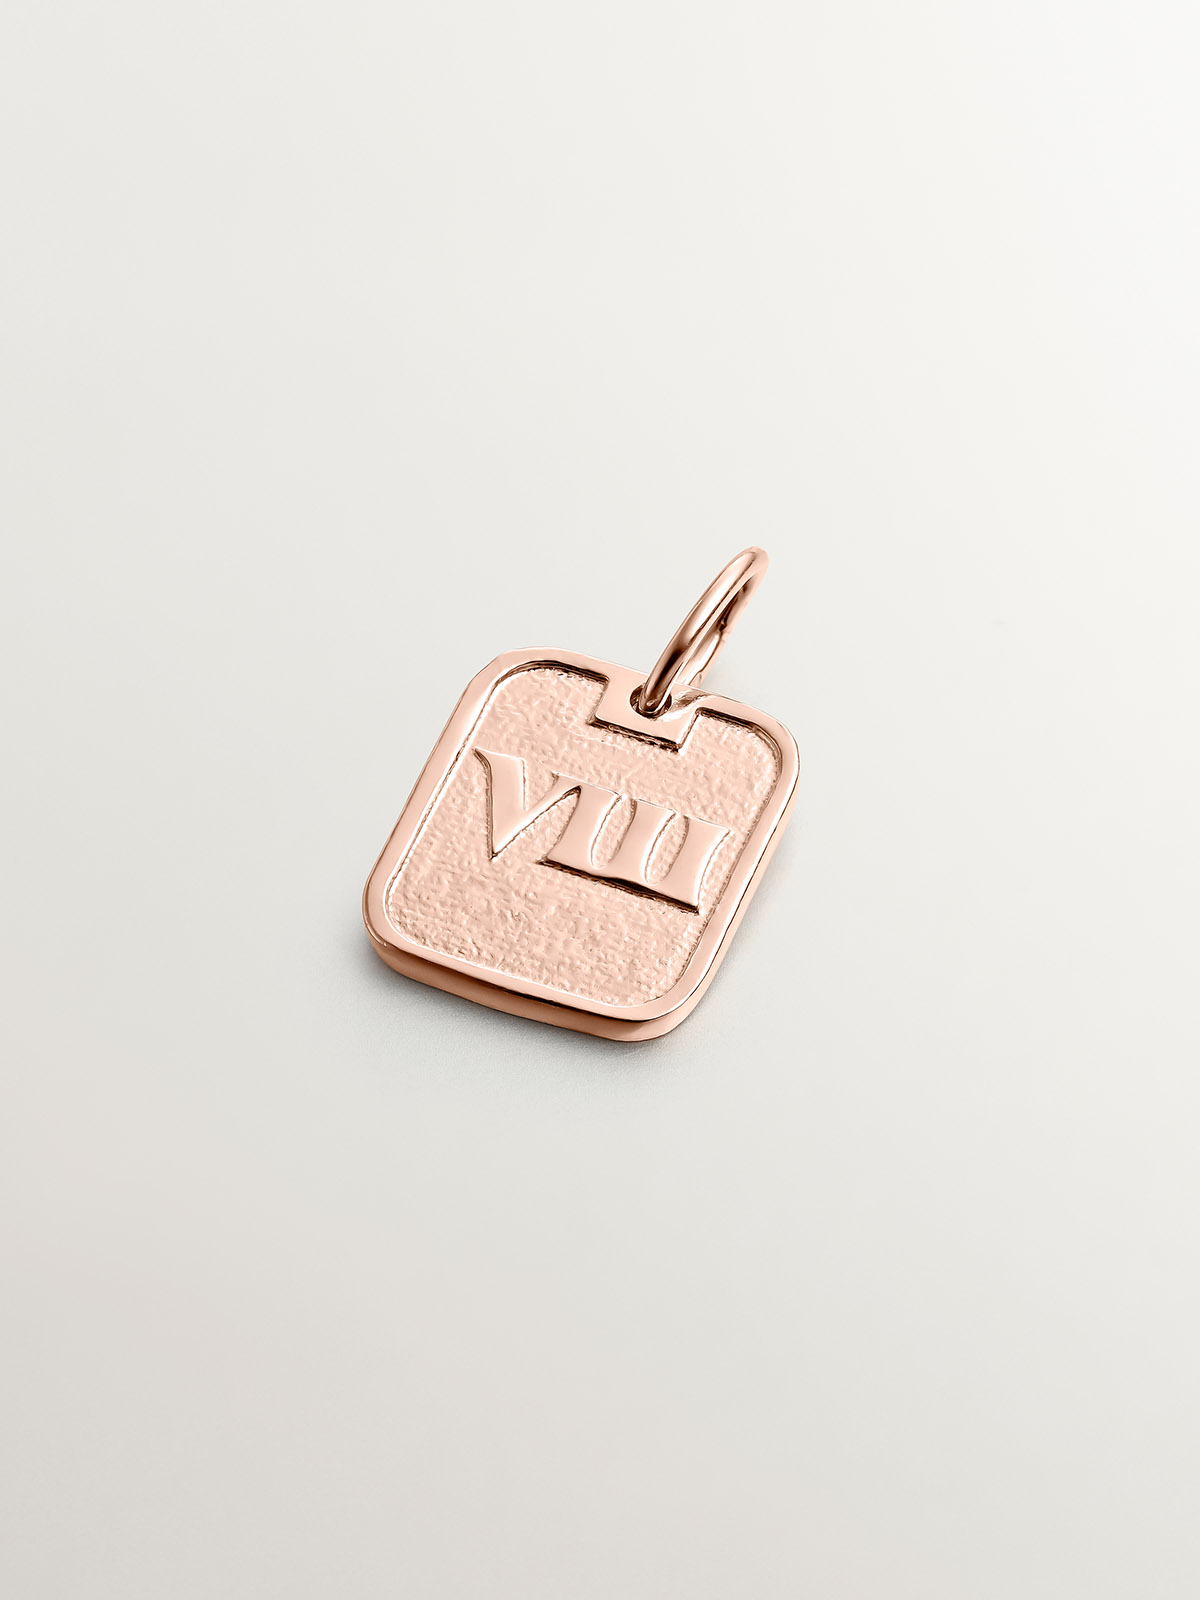 Charm de plata 925 bañada en oro rosa de 18K con número 8